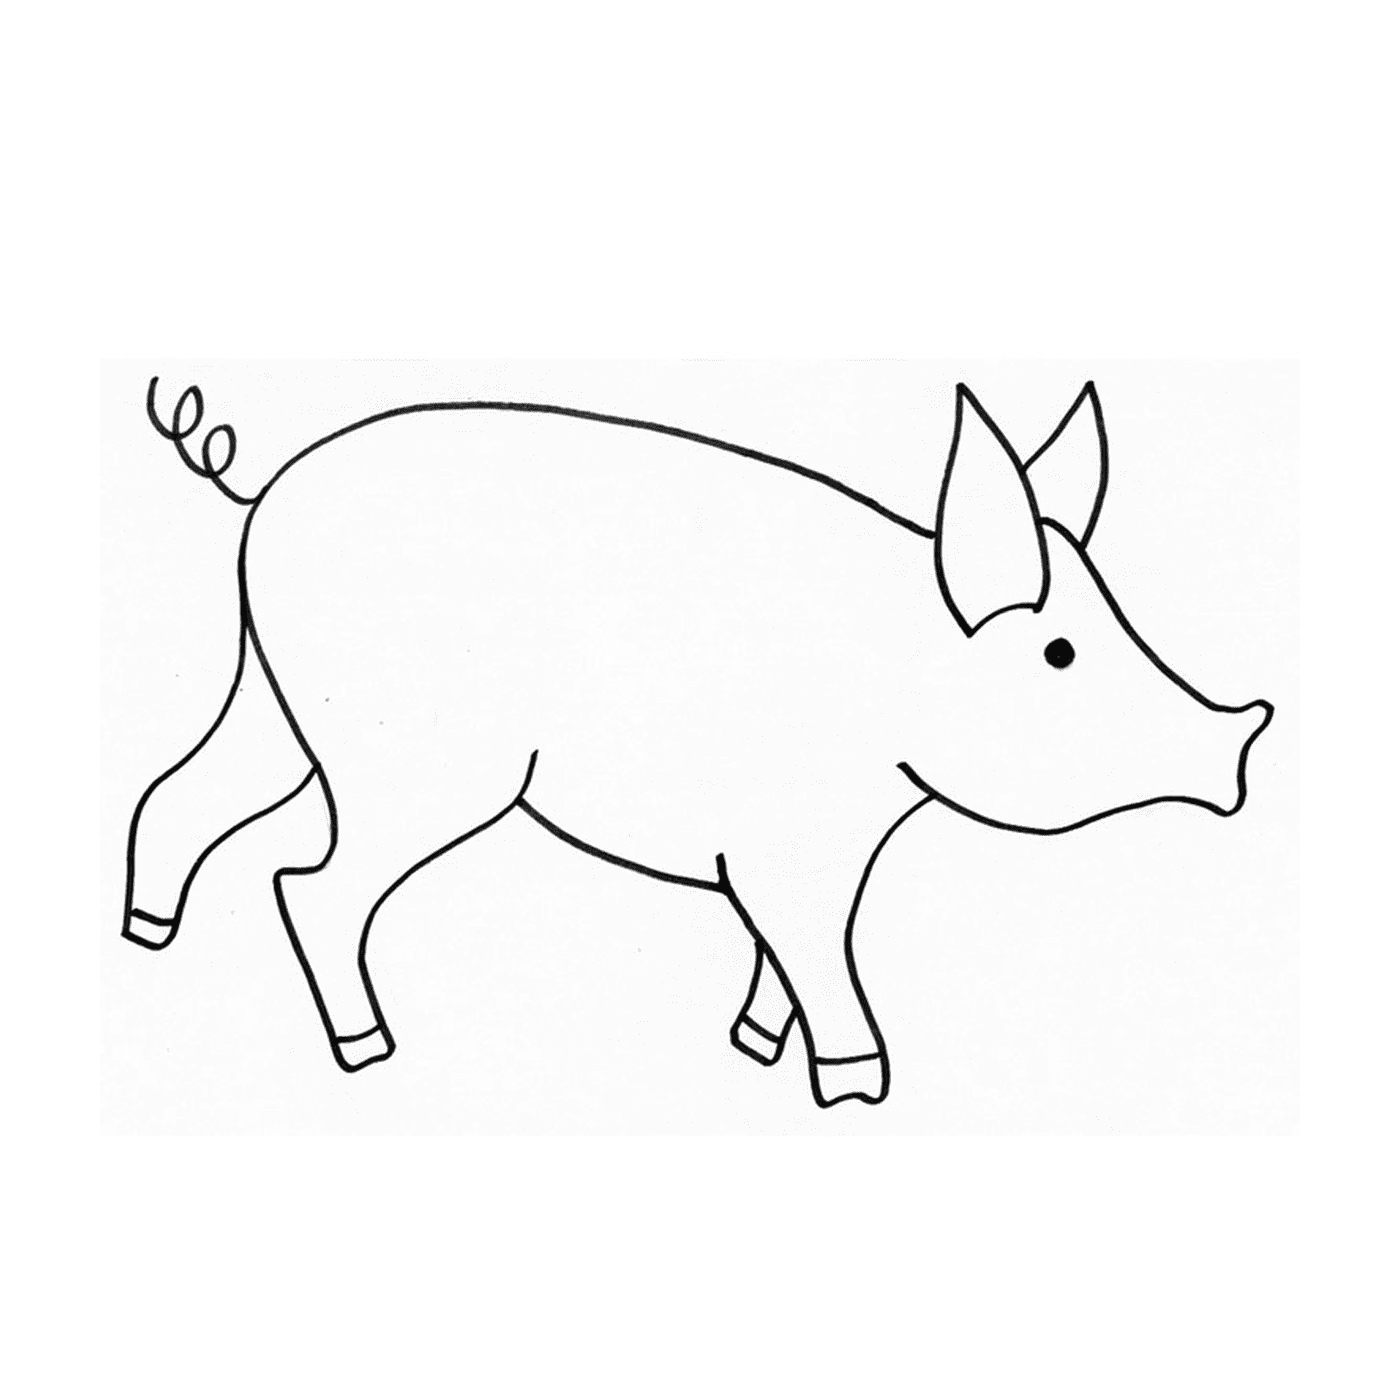  画画风格的小矮猪 